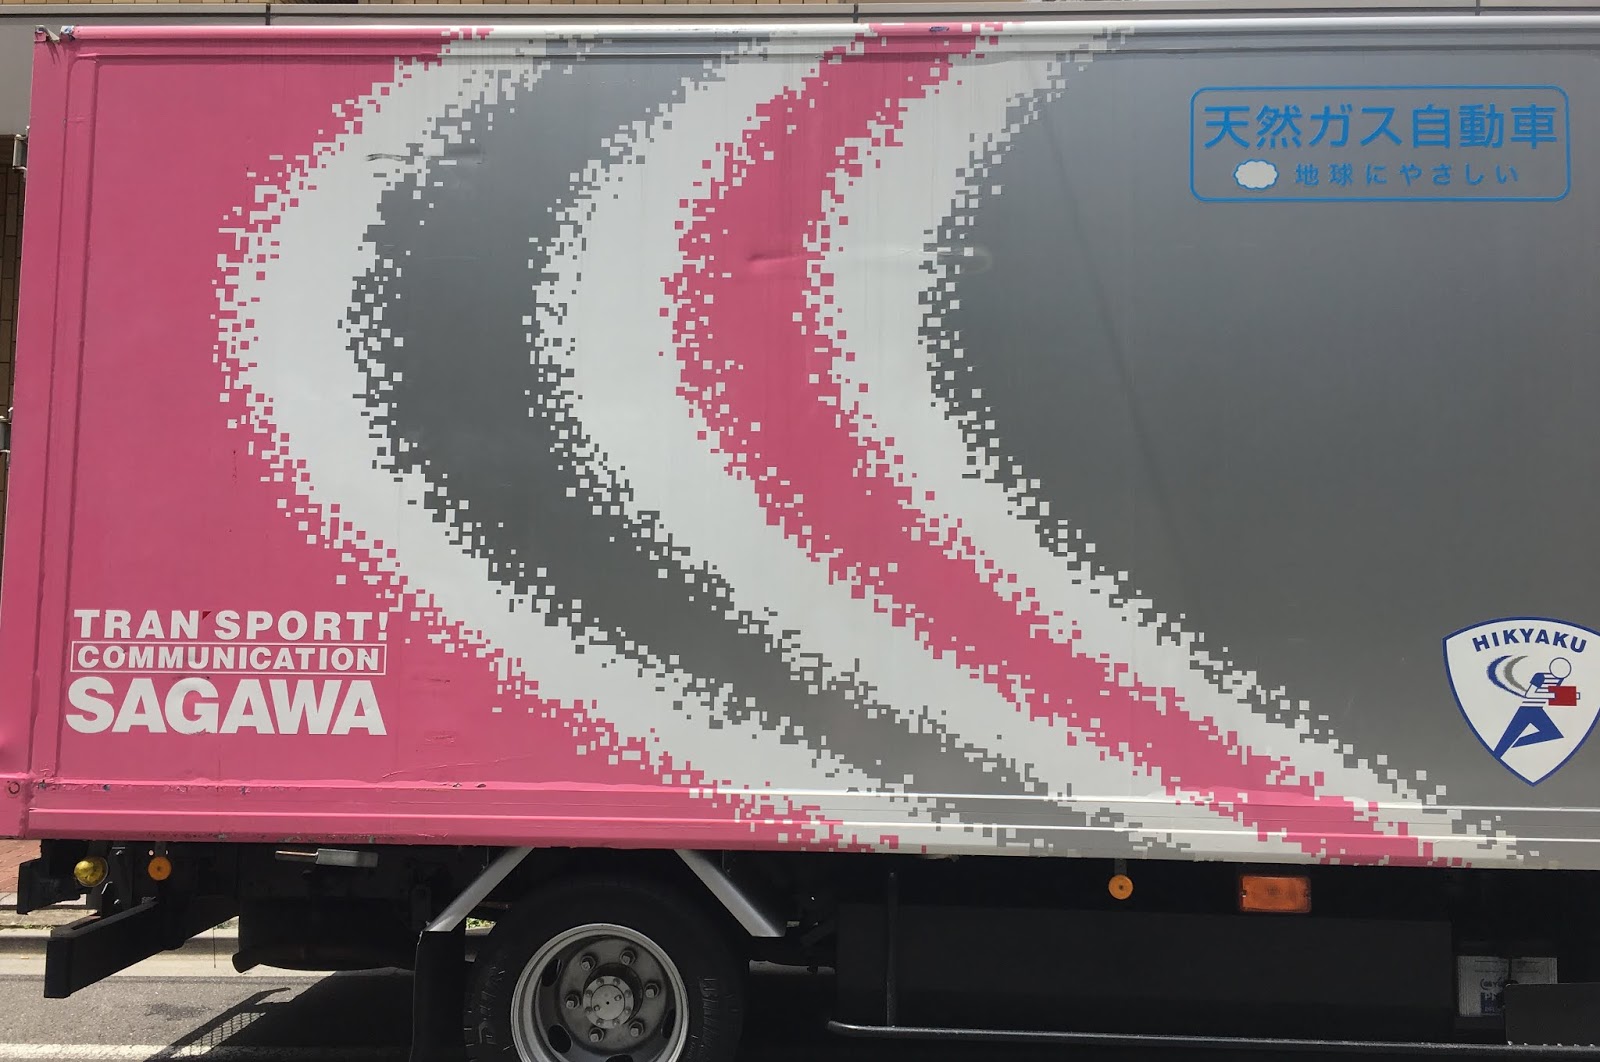 40歳ぐらいの雑談系日記 佐川急便の色がピンクになった カラートラックを初めて見た